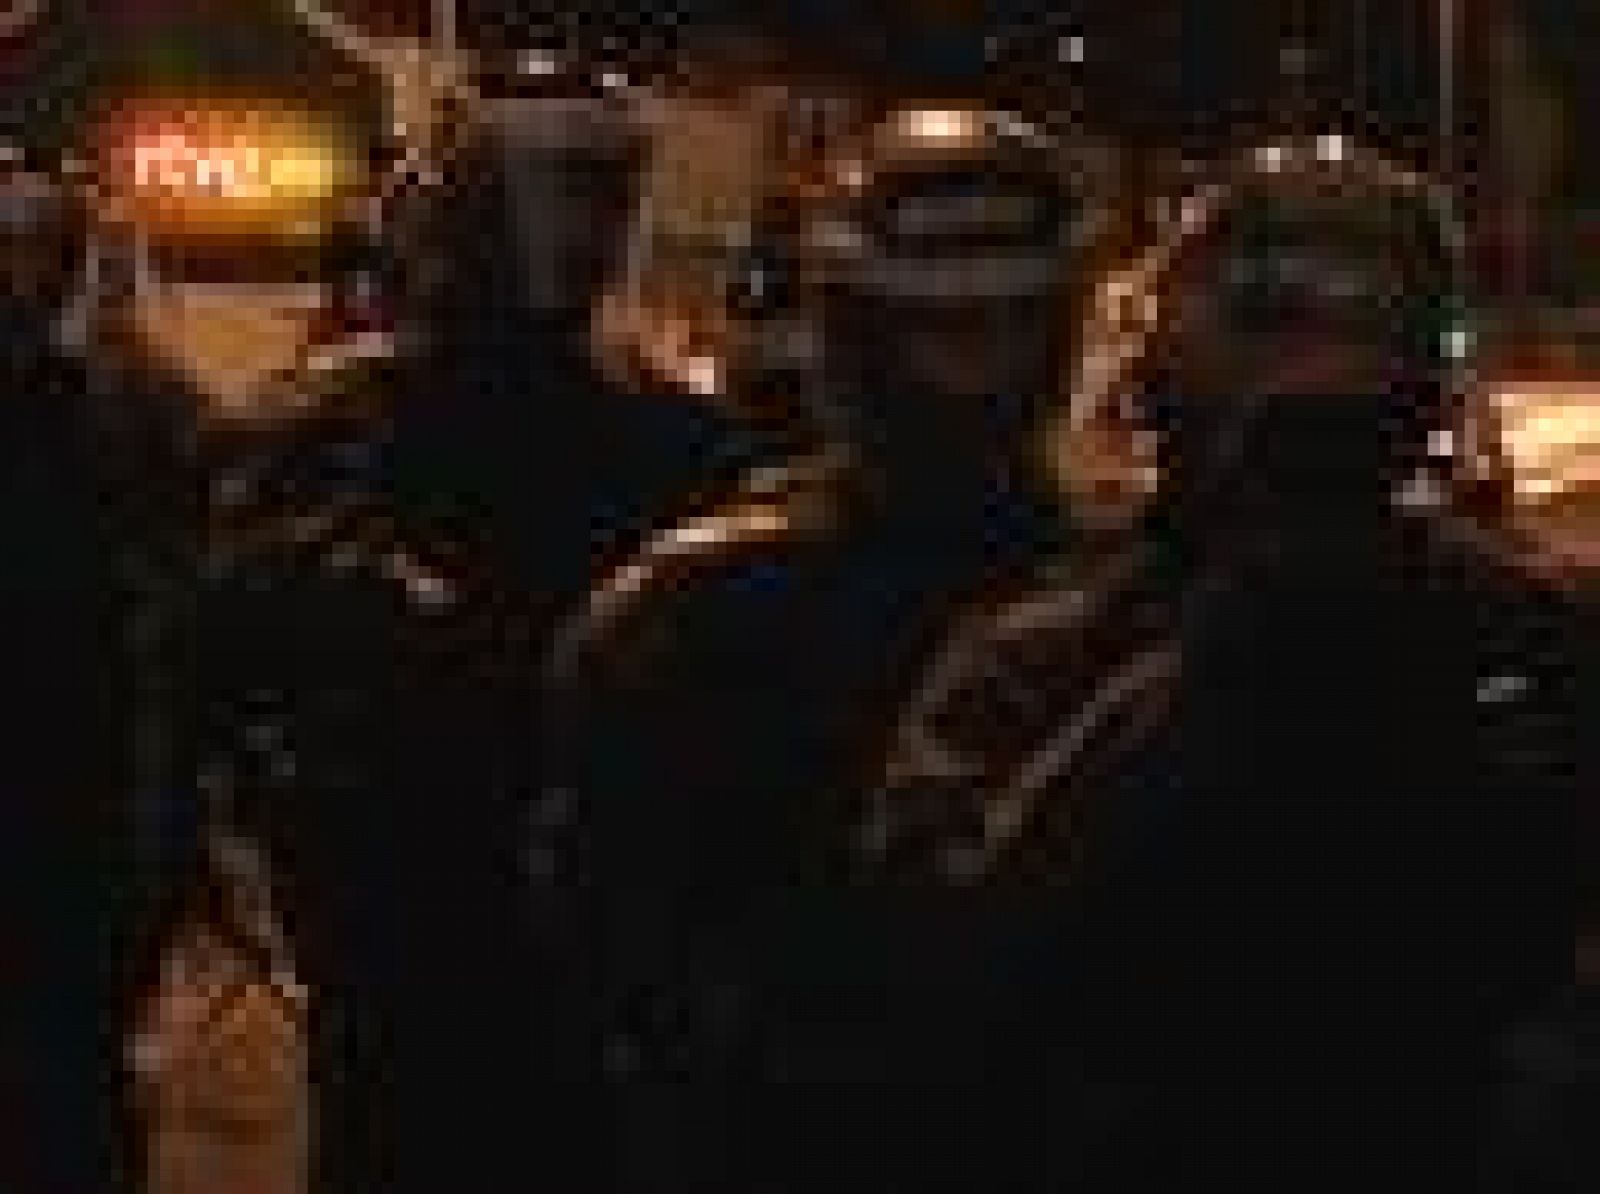  Un grupo de jóvenes se ha enfrentado a la polícia en el centro de Belfast tras la marcha de los unionistas.